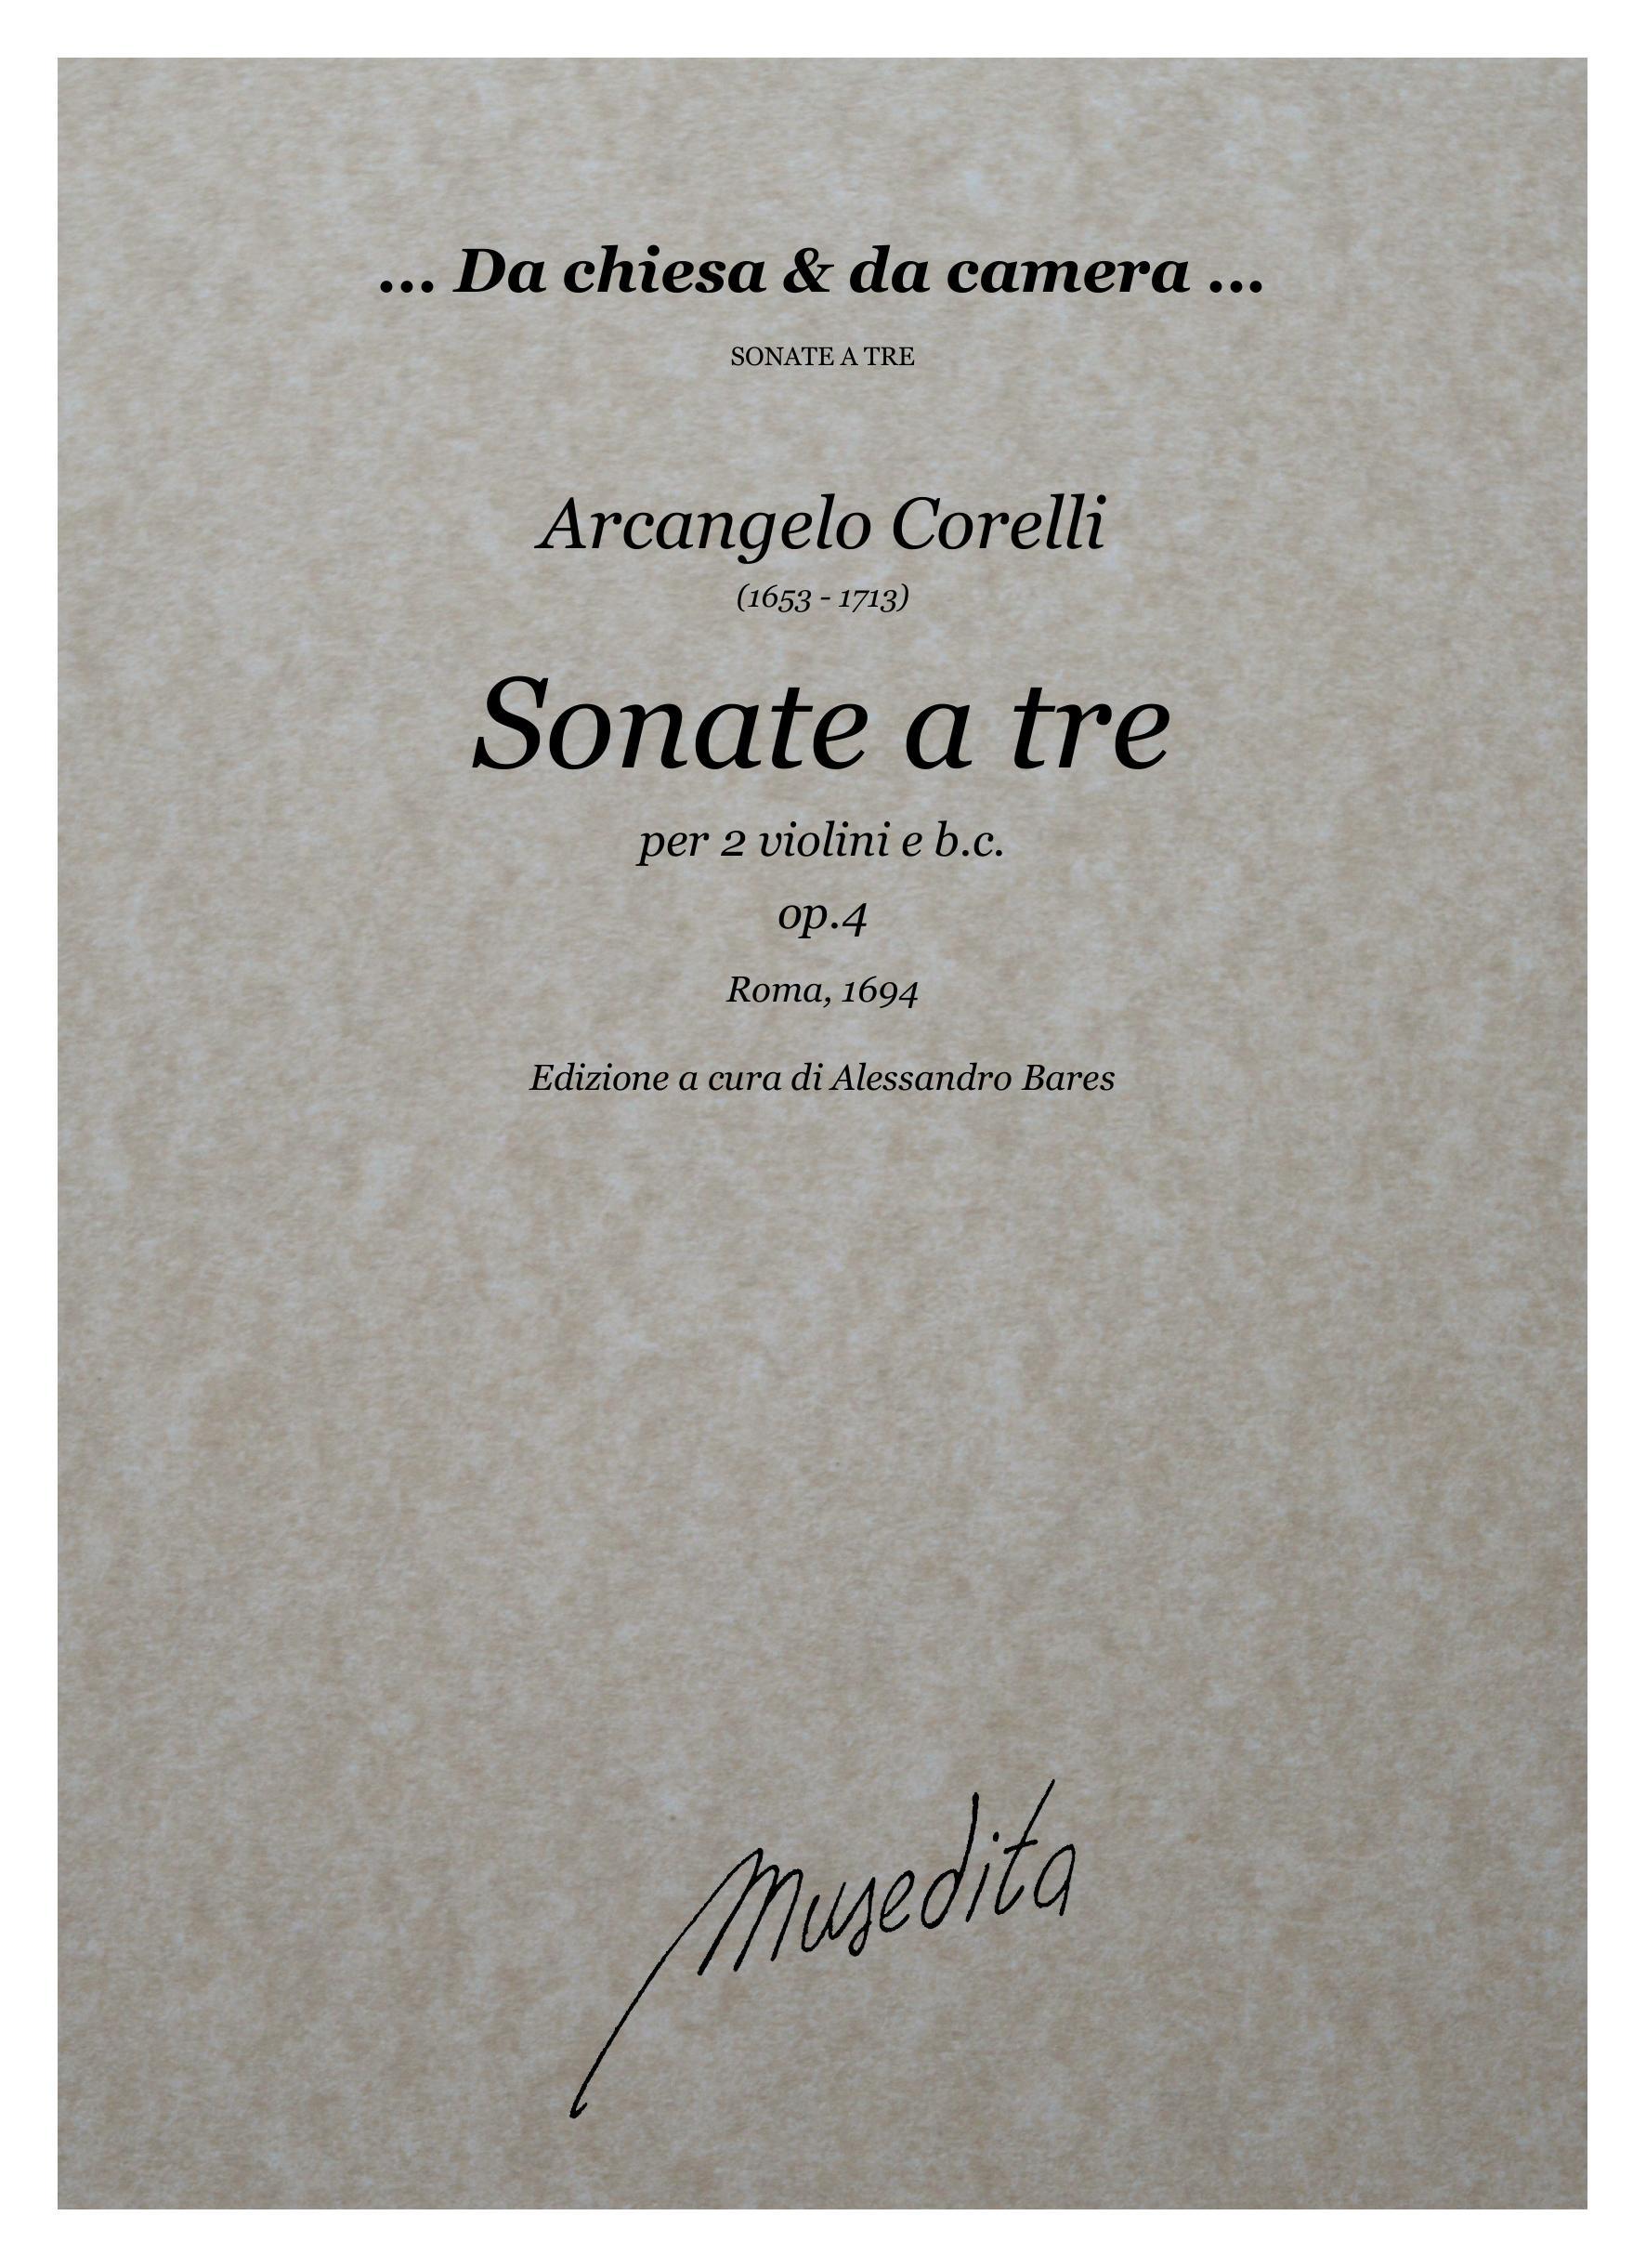 A.Corelli: Sonate da camera a tre op.4 (Roma, 1694)